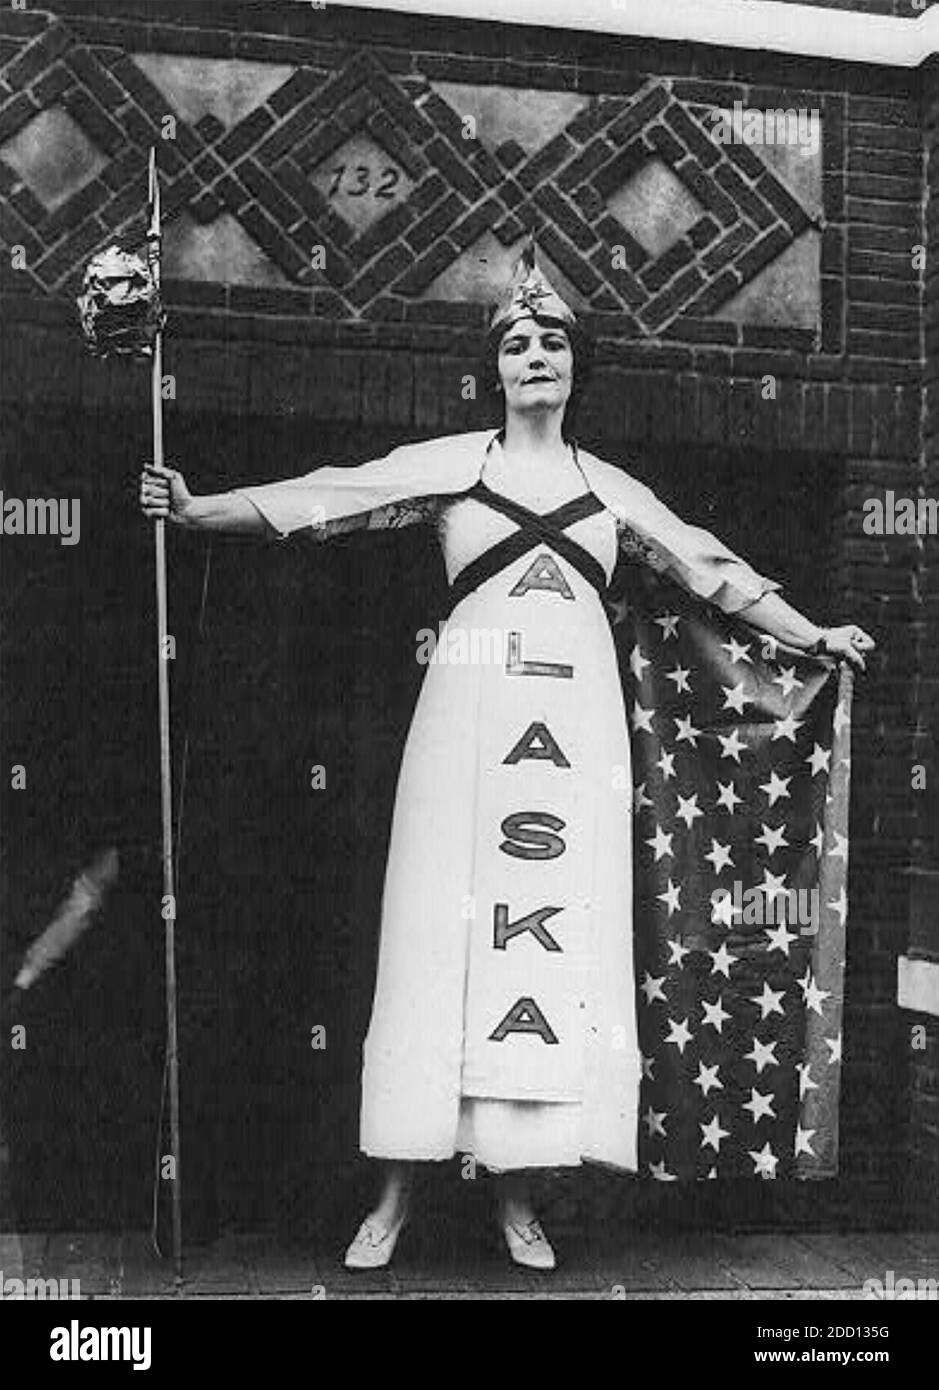 MARGARET VALE (1878-1947) amerikanische Film- und Bühnenschauspielerin und Feministin, Nichte von Präsident Wilson, bei einer Wahlparade in New York im Oktober 1915. Sie vertritt Alaska, das Frauen 1913 die Stimme gab. Stockfoto